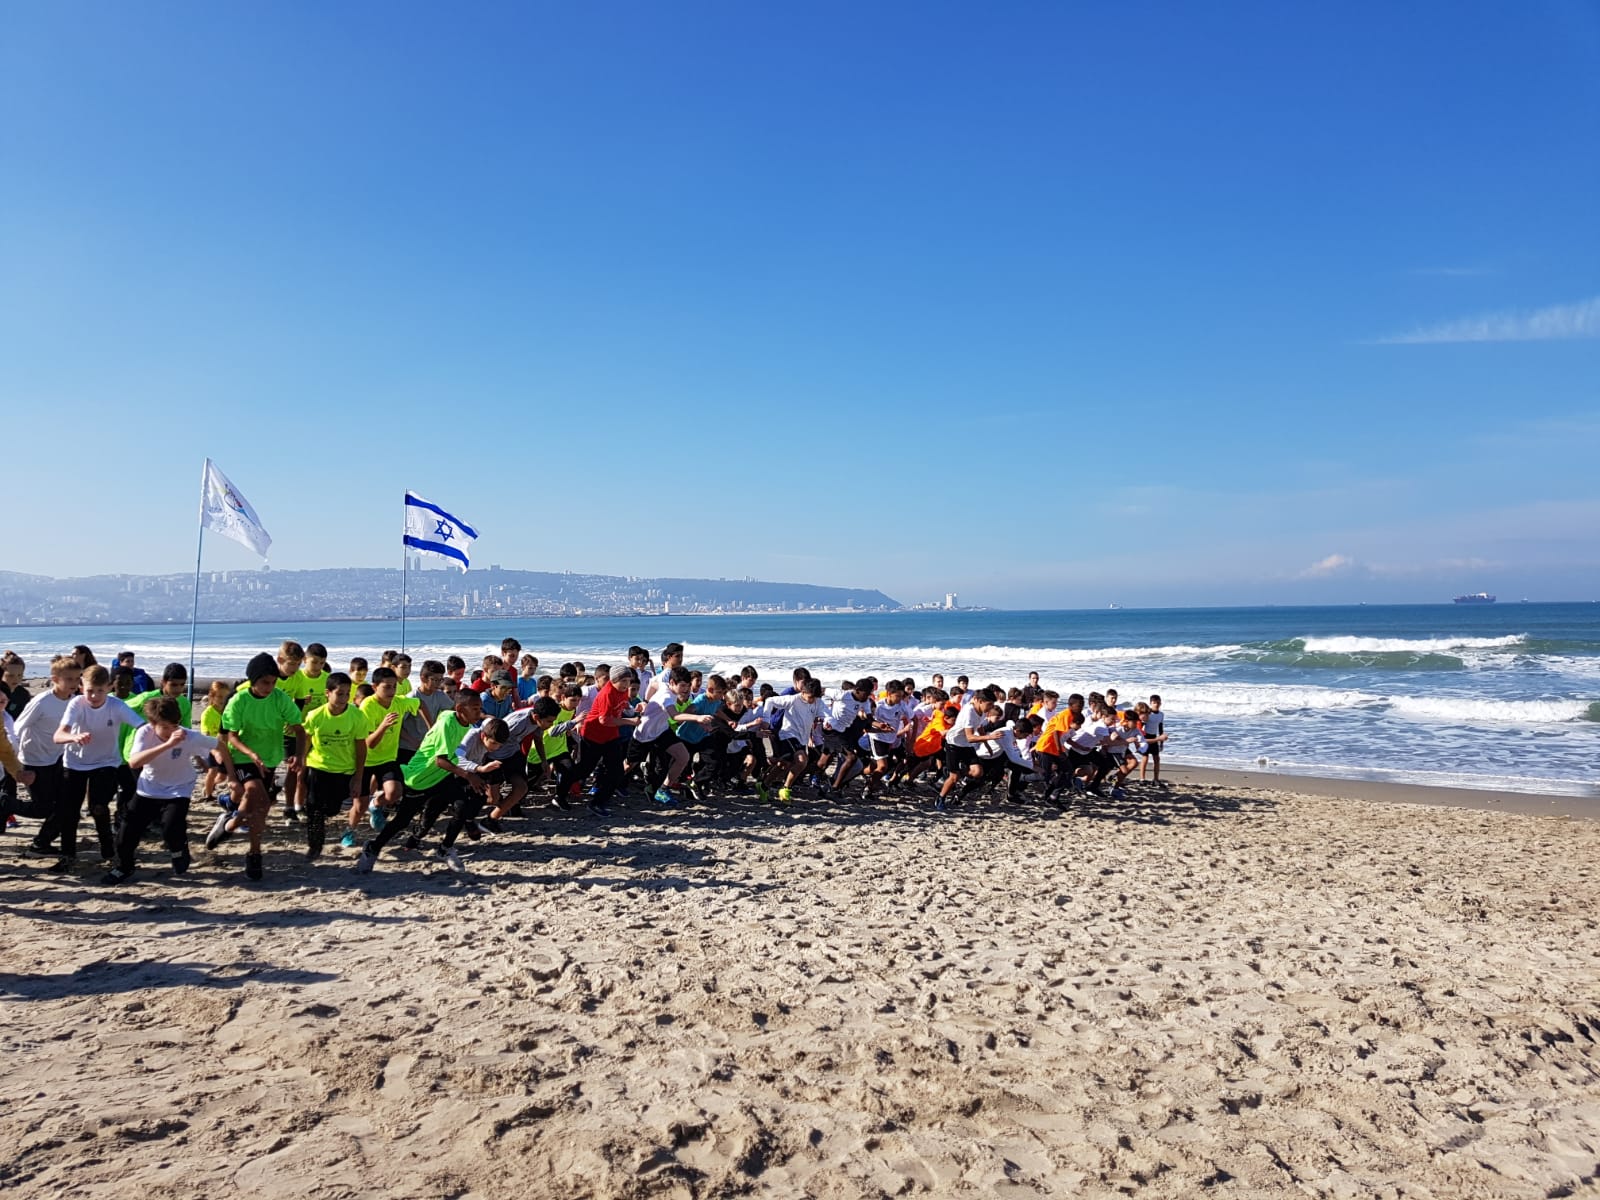 מאות תלמידים ממחוז חיפה באליפות מרוצי השדה בחוף הים של קריית ים